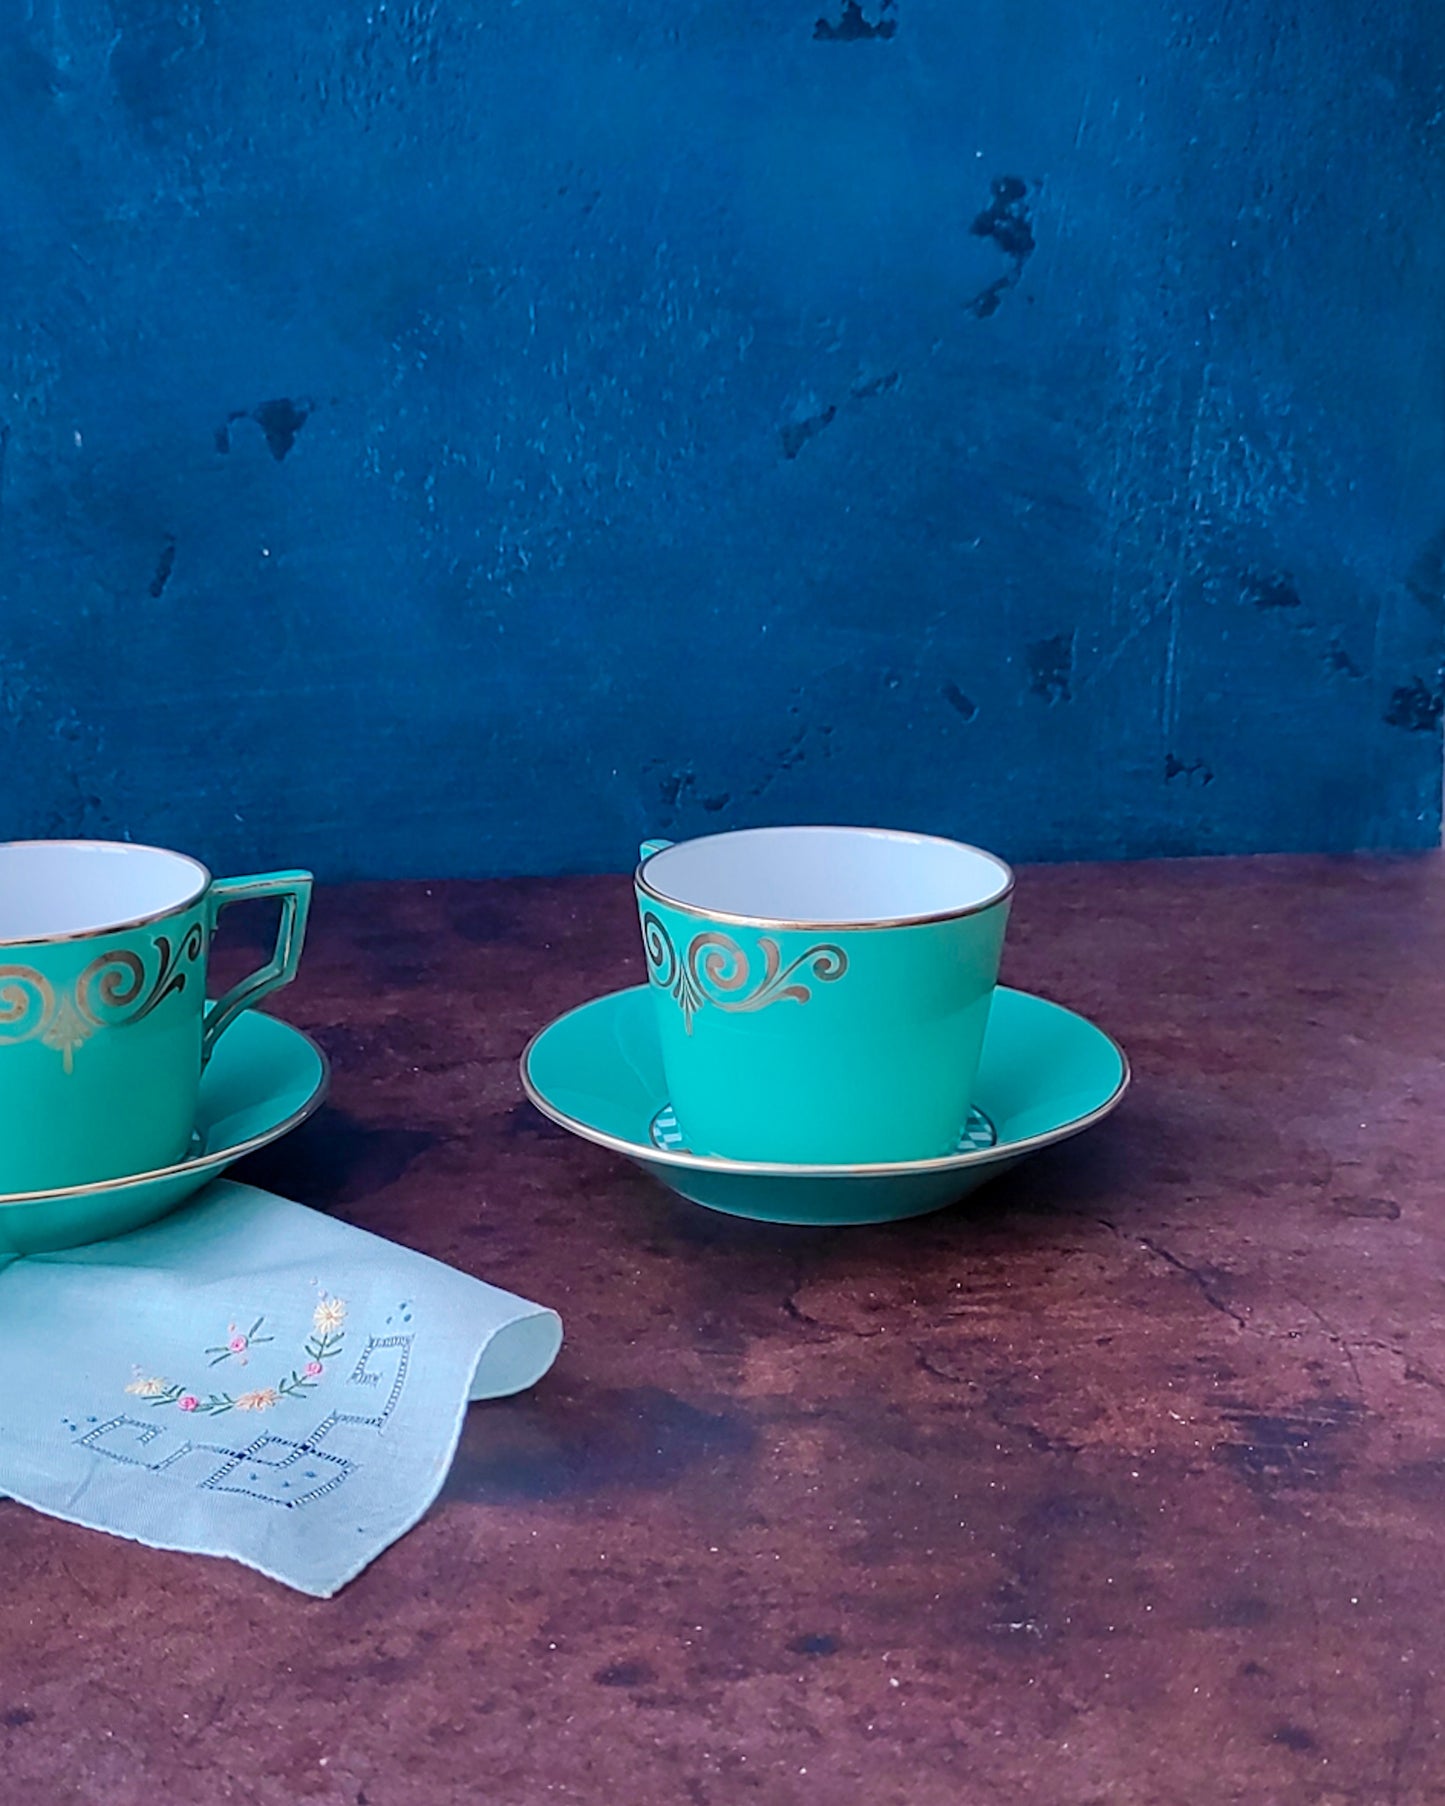 coppia tazze da tè  richard ginori da collezione Claudio La Viola